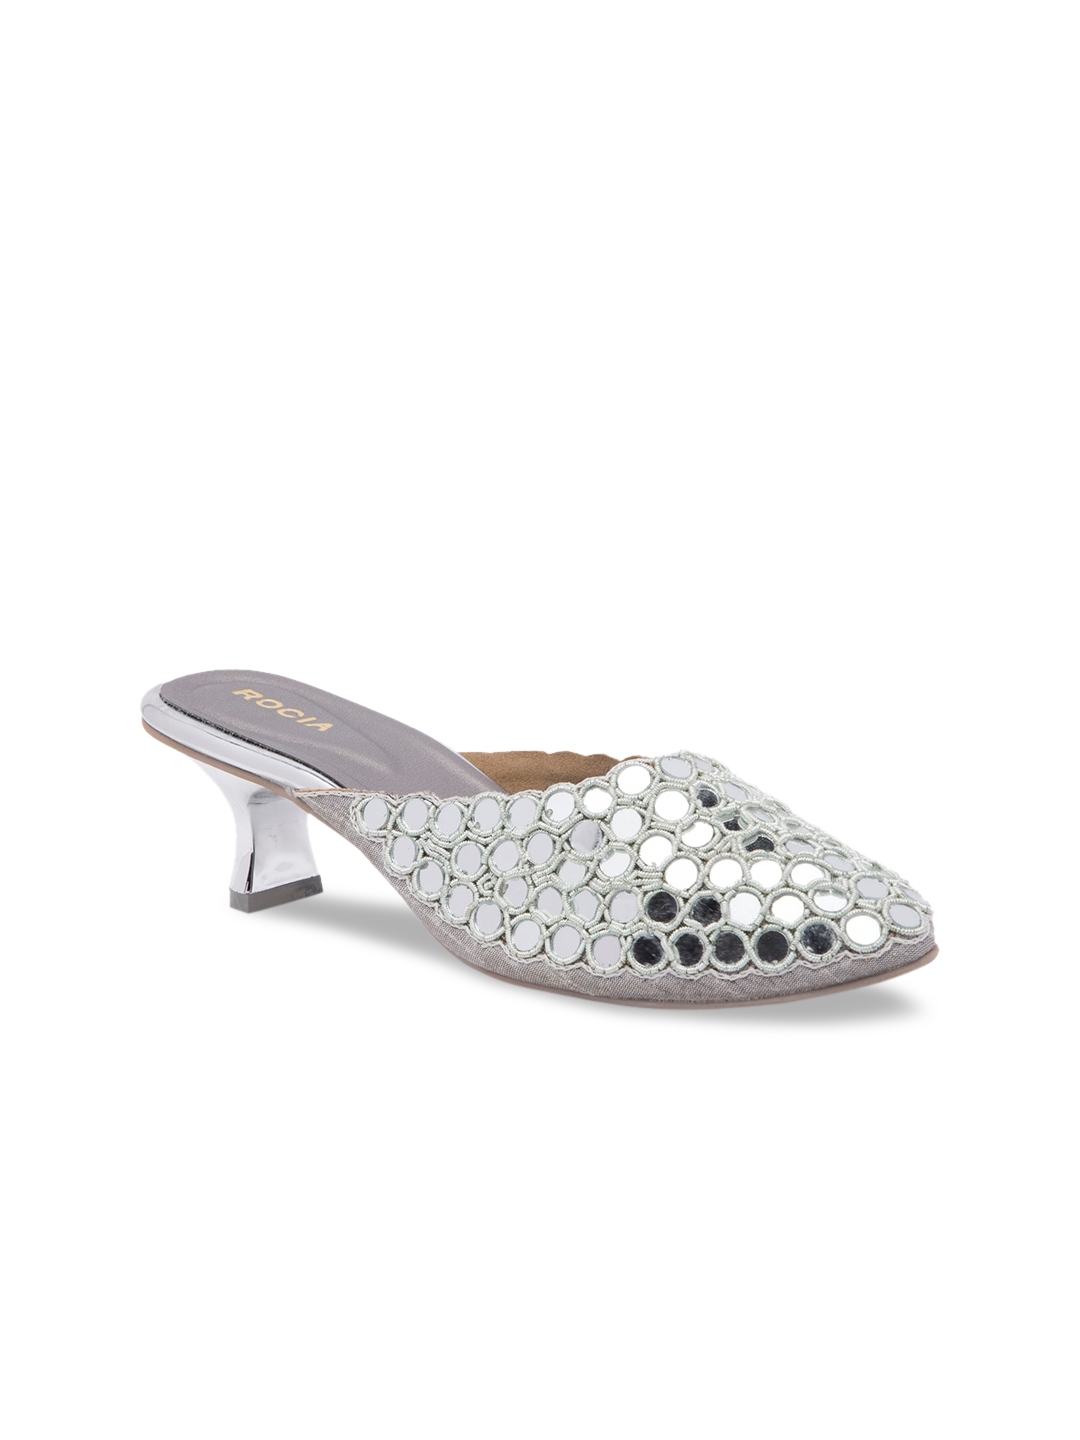 Buy Rocia Women Silver Toned Embellished Mules - Heels for Women ...